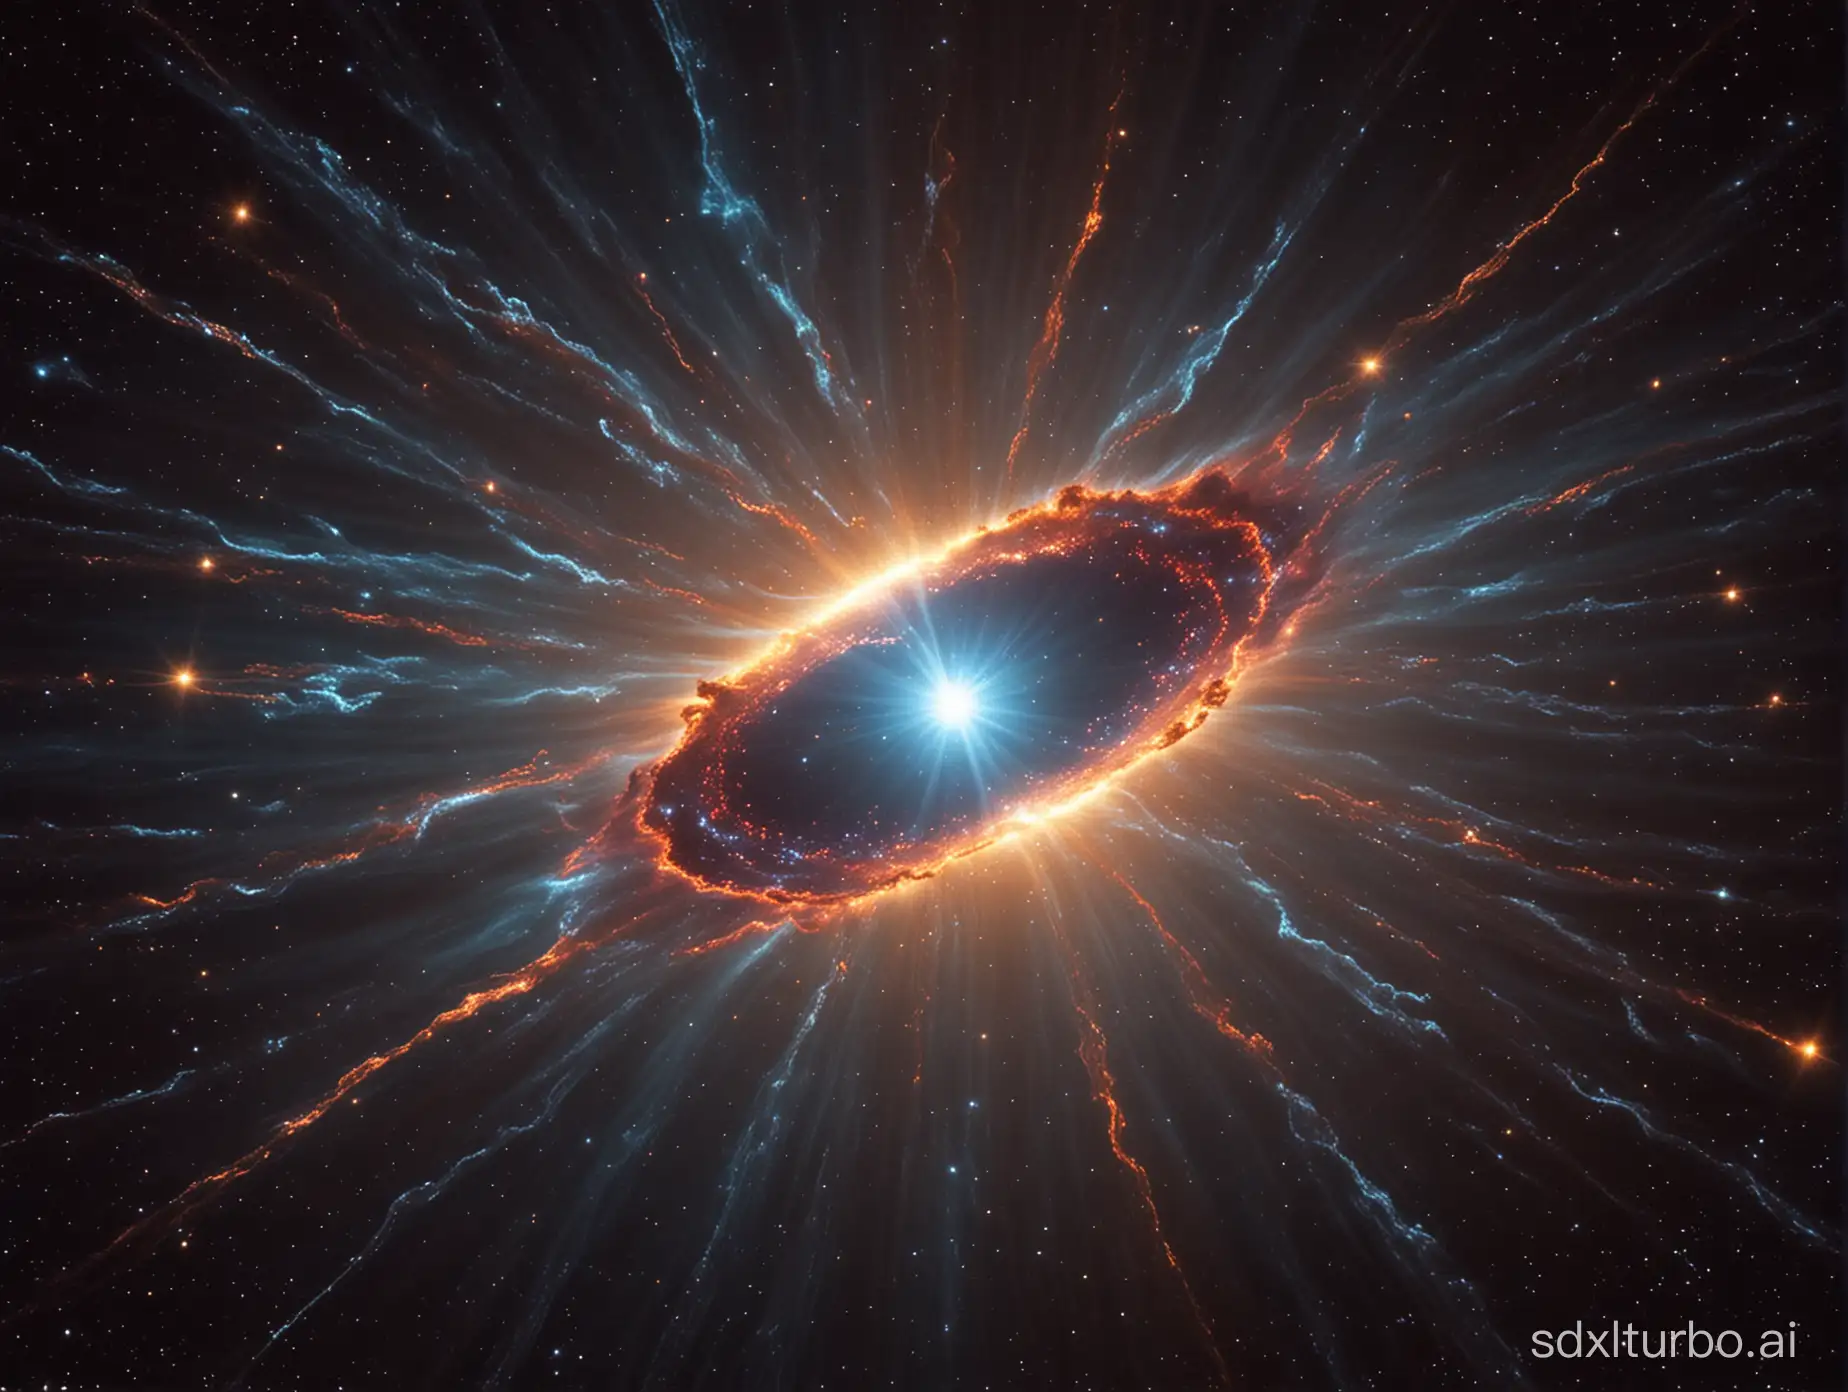 Vibrant-Supernova-Exploding-in-Cosmic-Glory